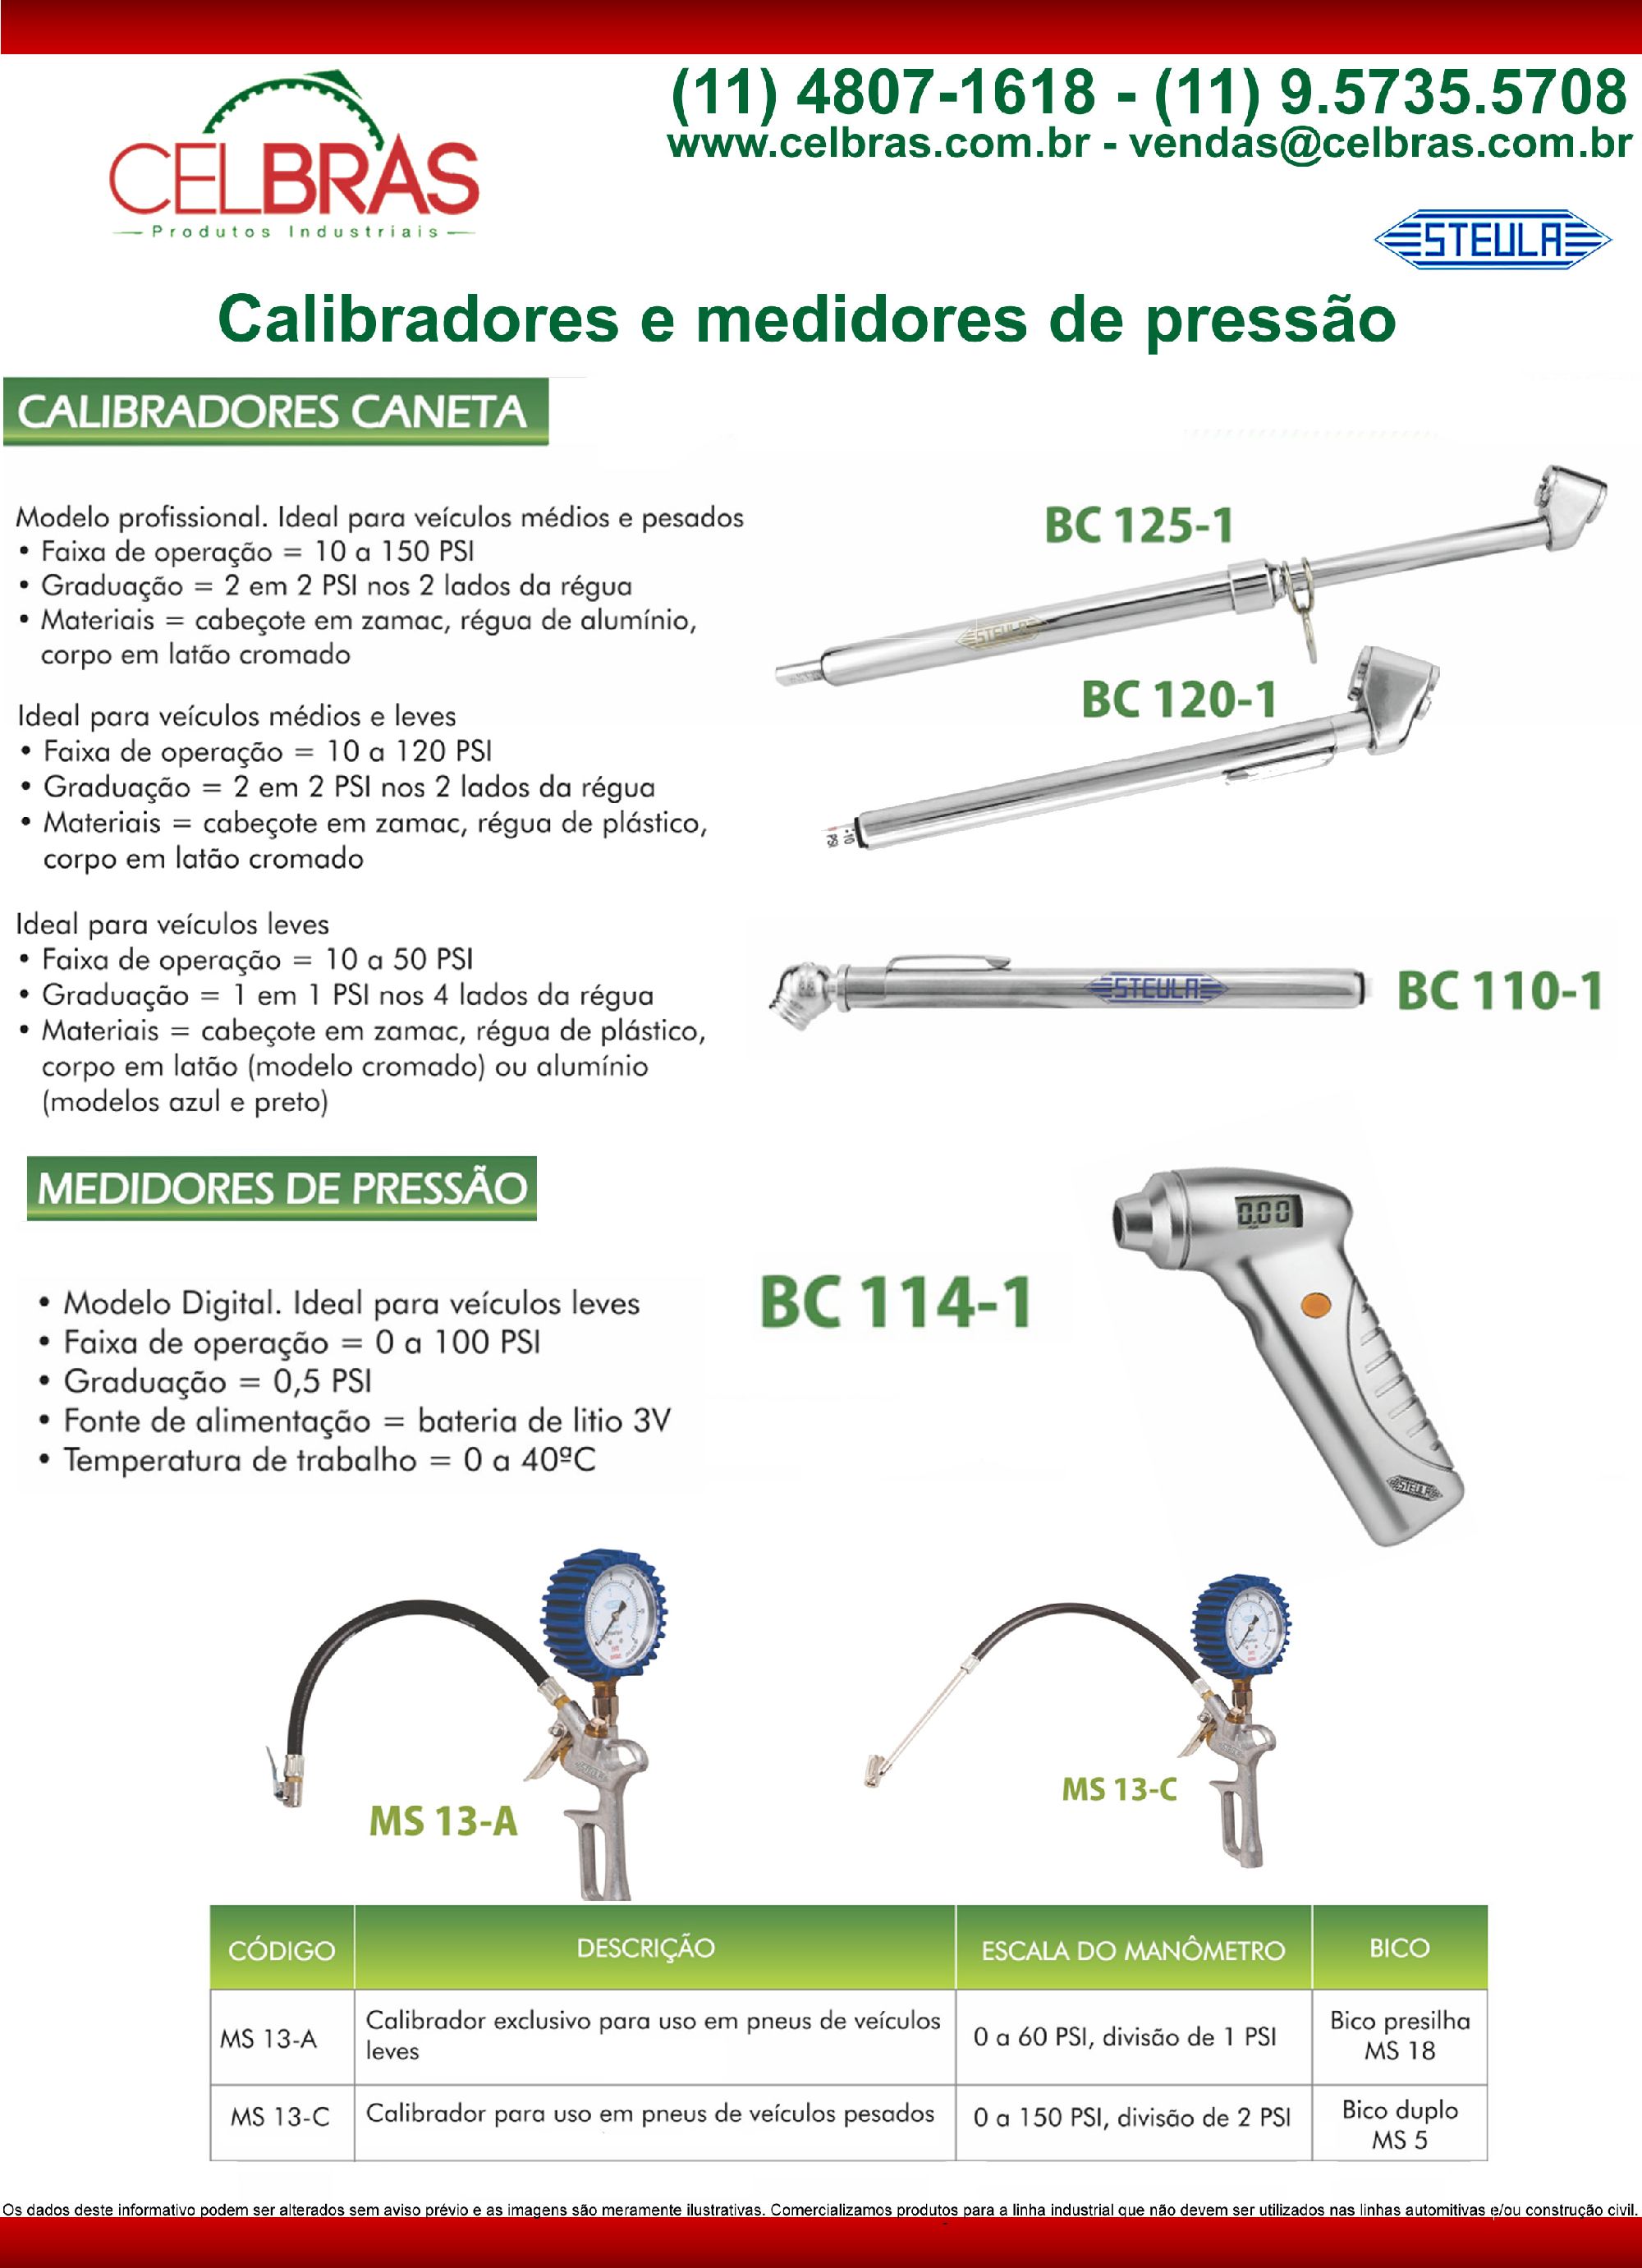 Calibradores e medidores de pressão